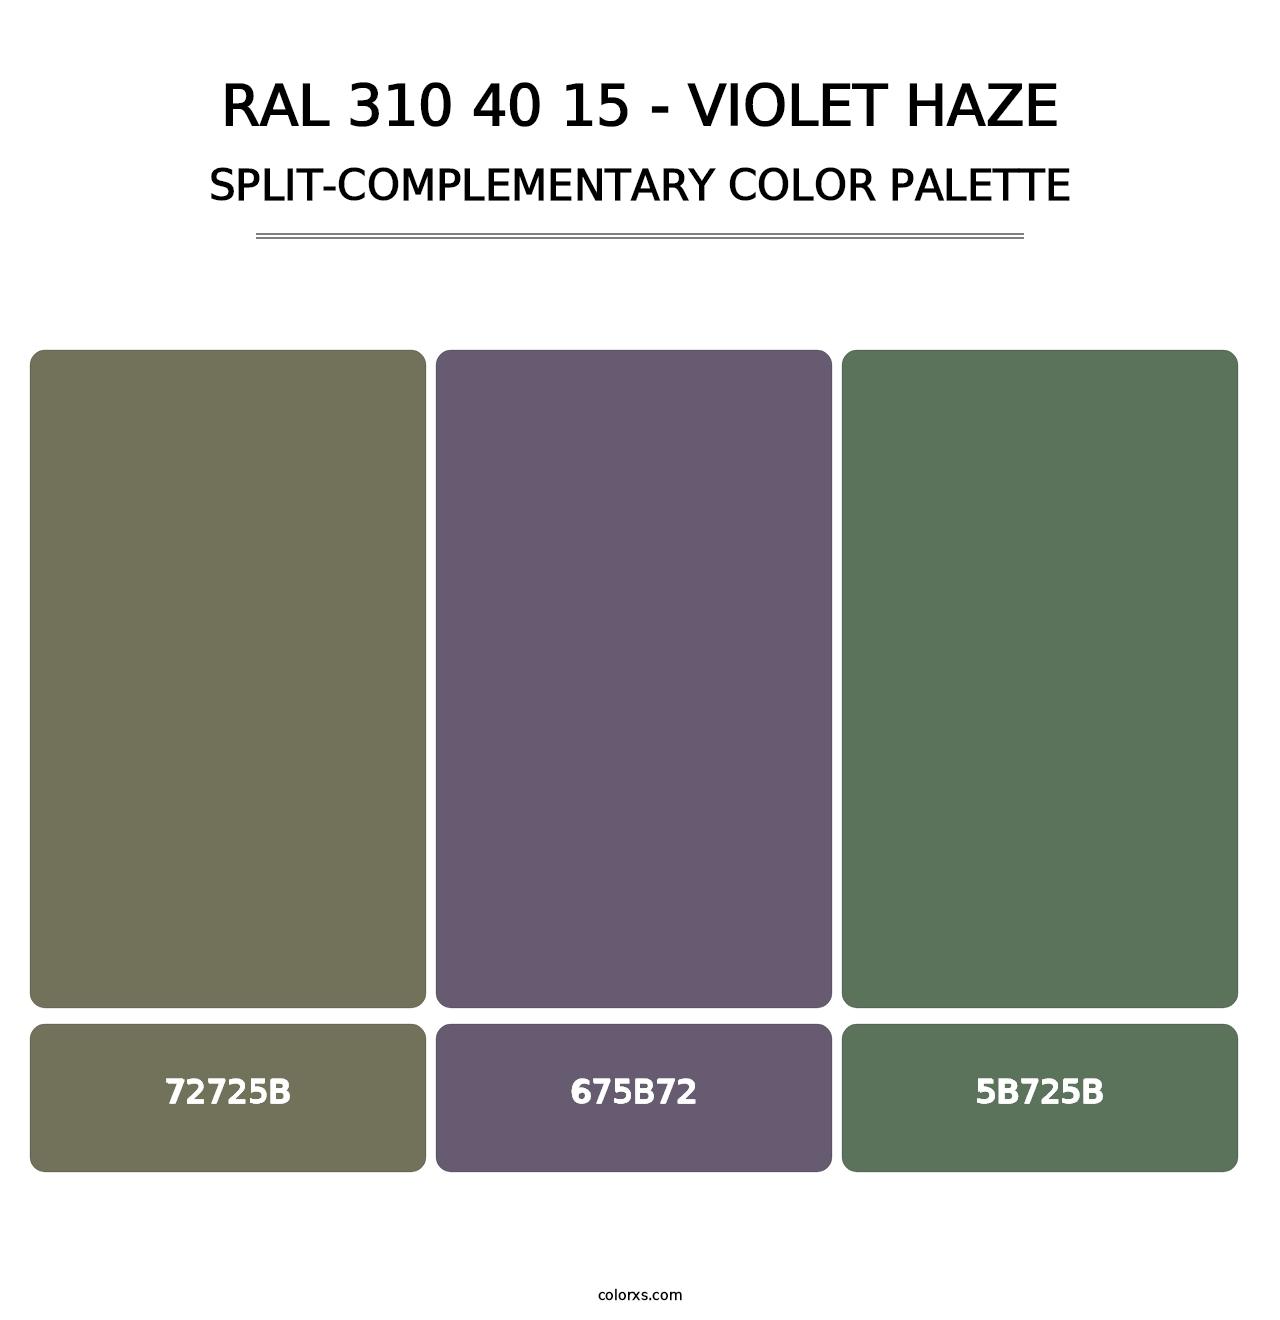 RAL 310 40 15 - Violet Haze - Split-Complementary Color Palette